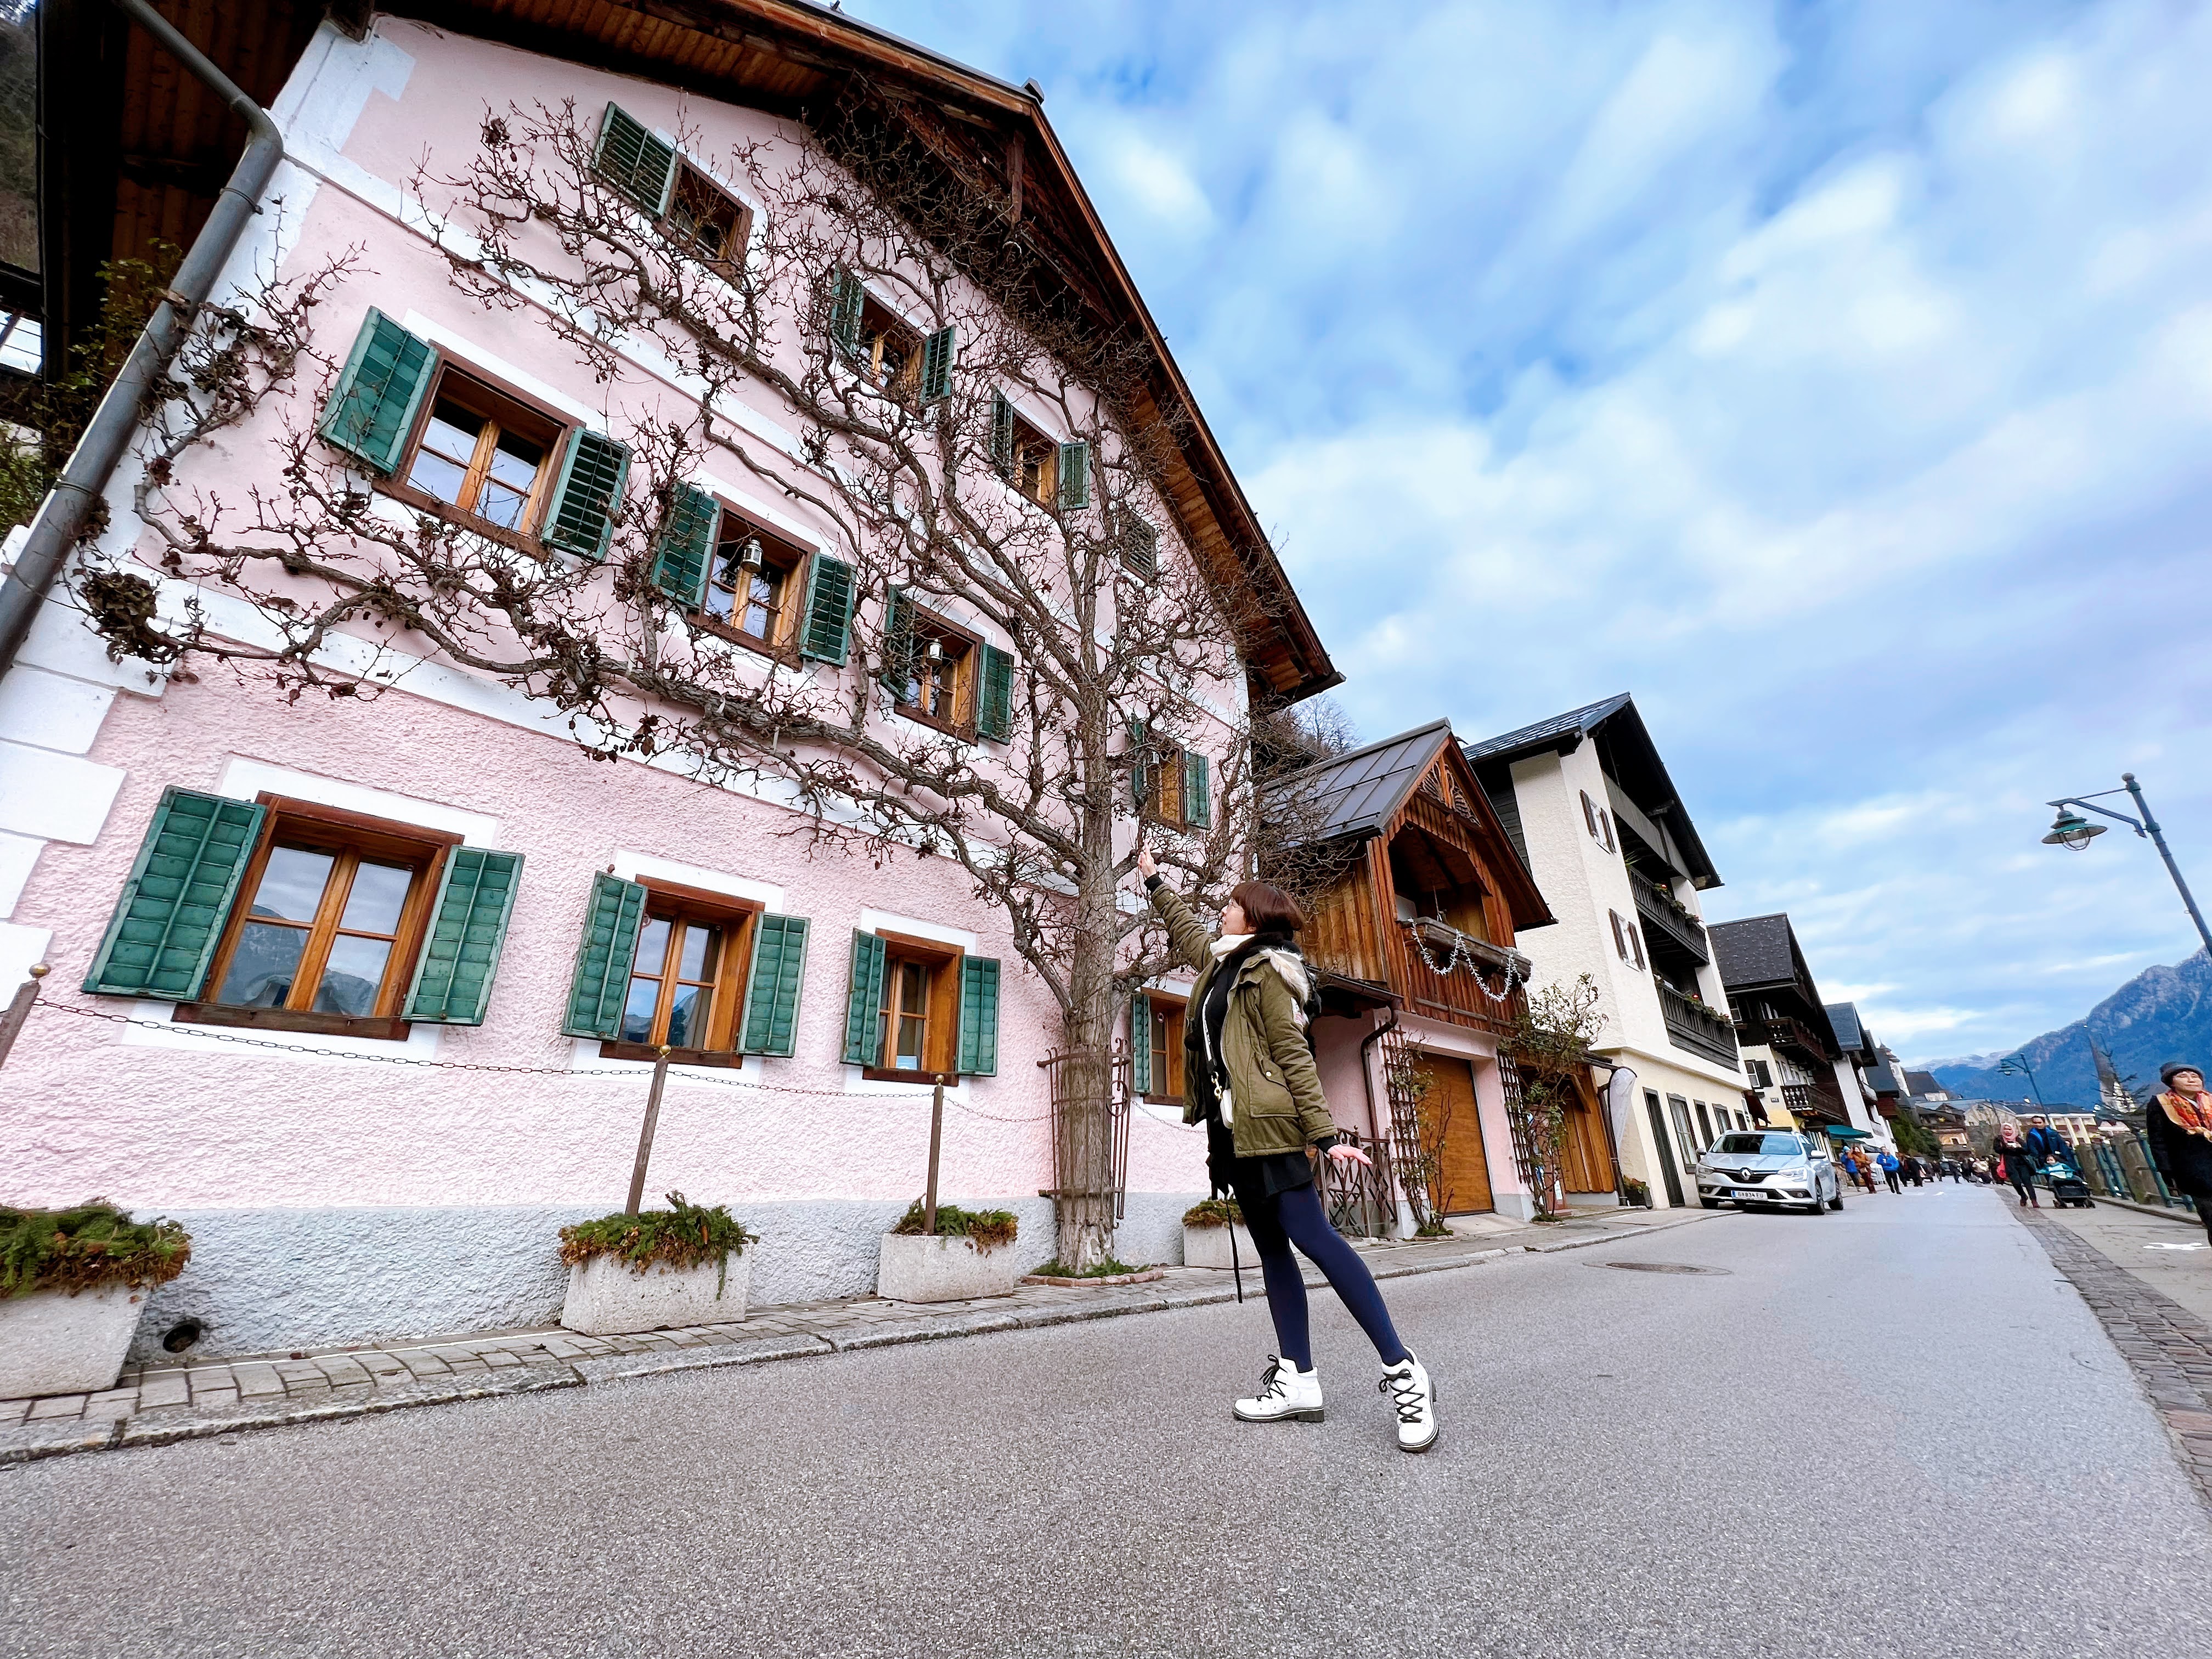 【奧地利-Hallstatt】歐洲最美小鎮哈爾施塔特 │哈修